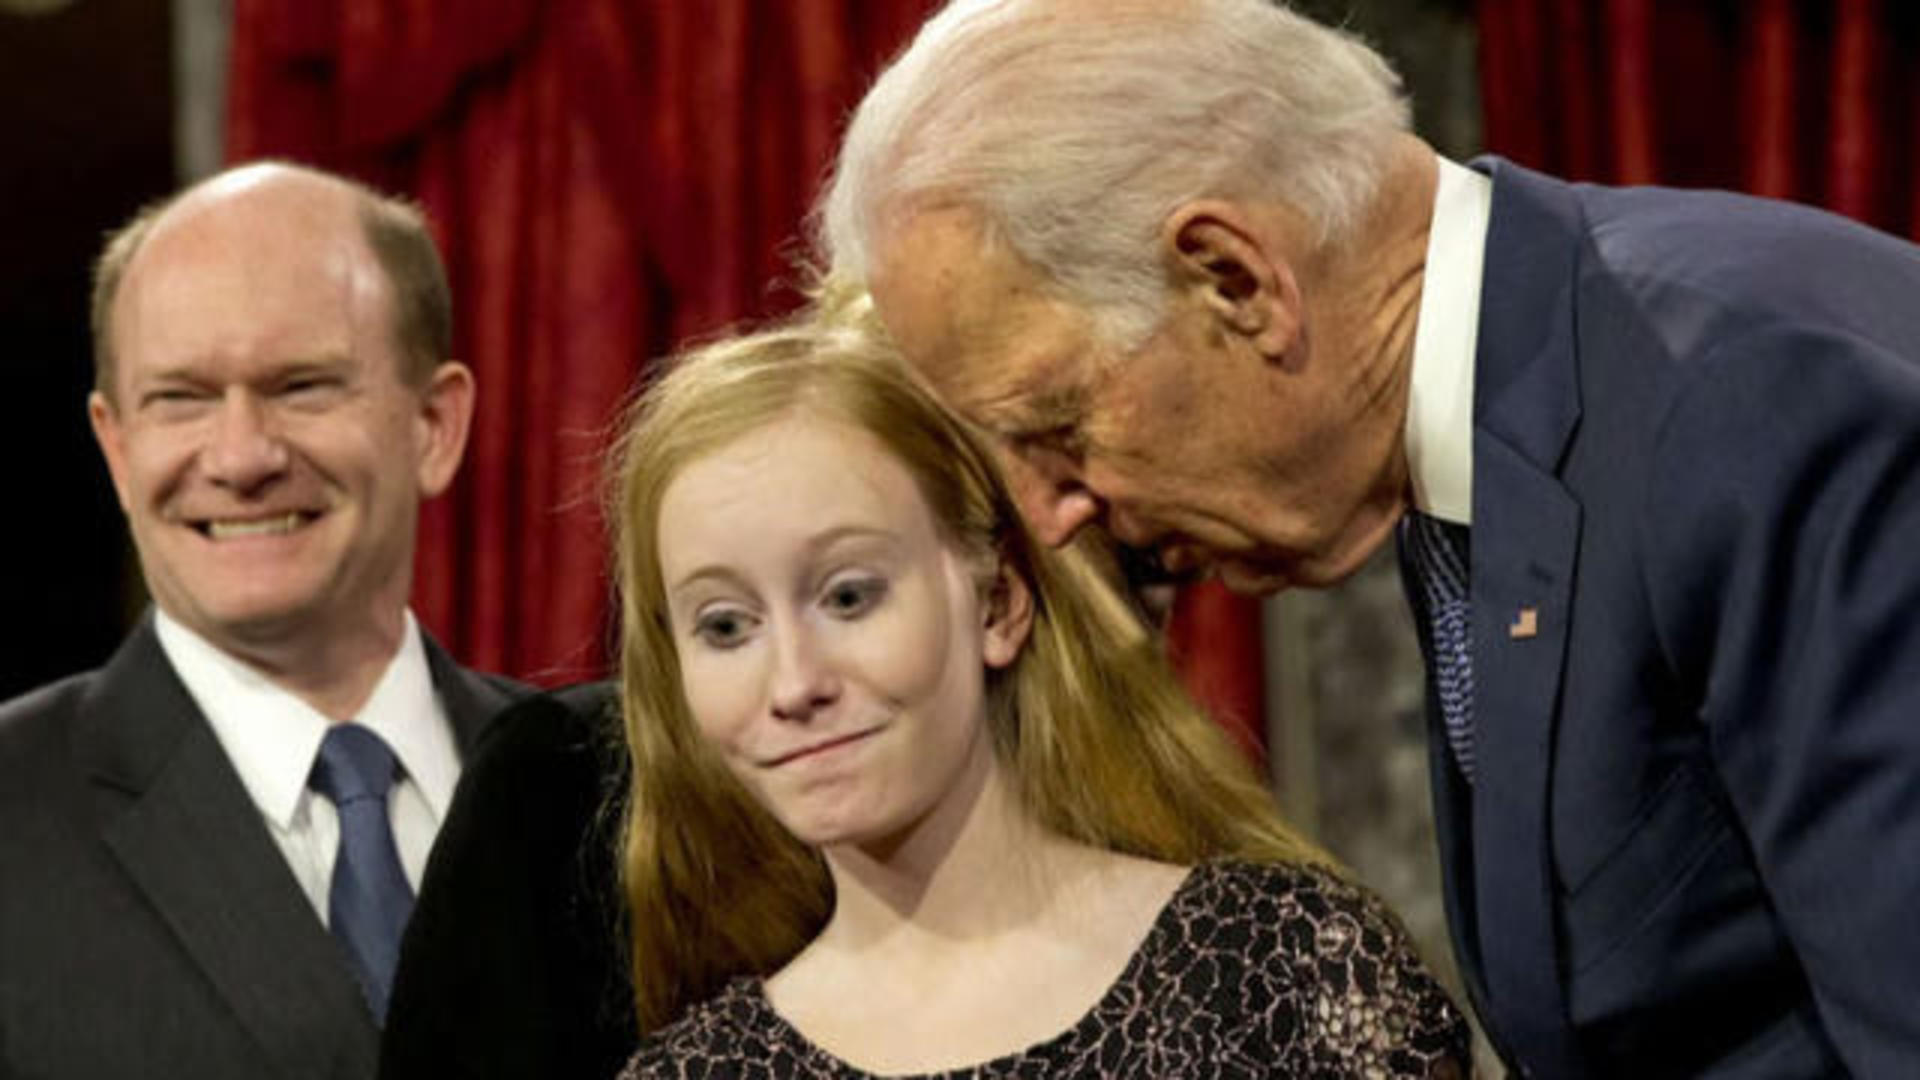 Democrats Joe Biden after accusations of inappropriate behavior - CBS News